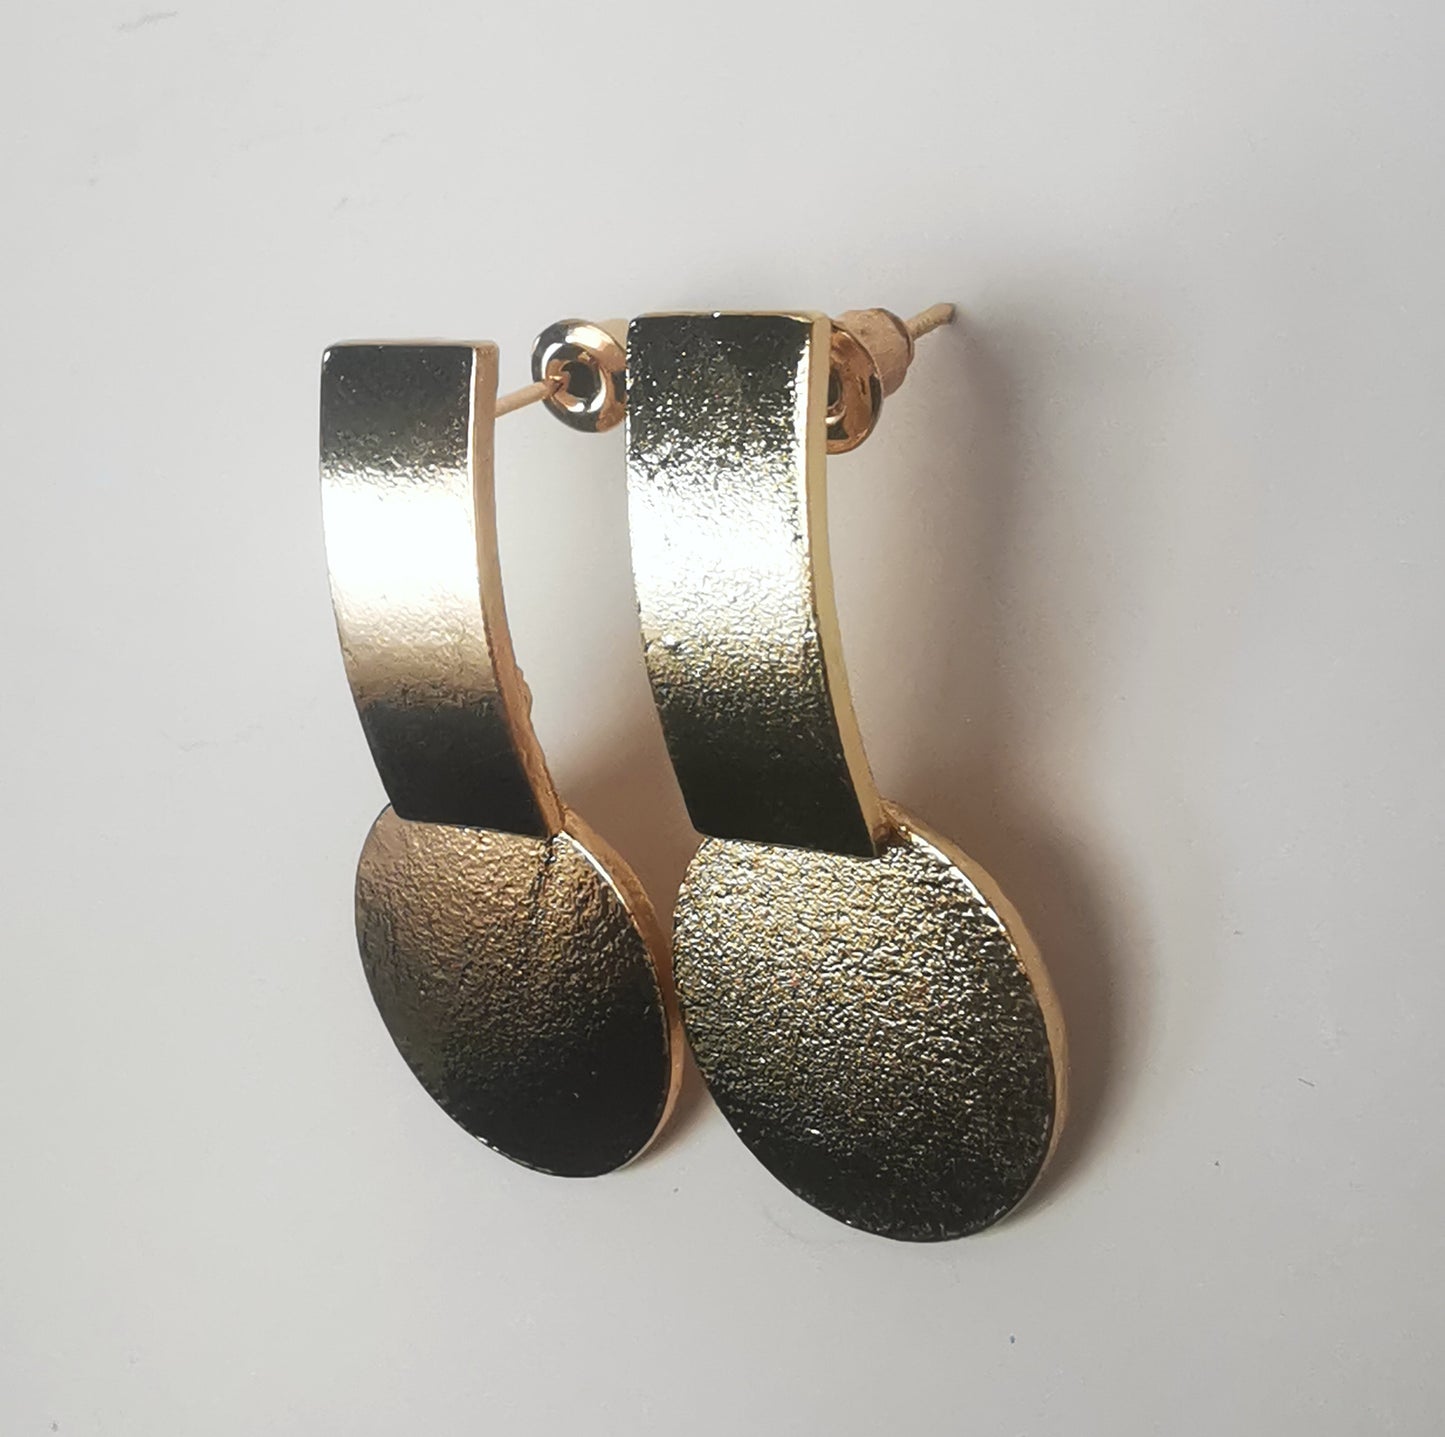 Boucles d'oreilles sur clous en métal doré. Un premier rectangle vertical est fixé au clou. En dessus est suspendu un disque. Le tout est texturé. Présentées cote à cote, posées sur un fond blanc. Vue depuis la droite.